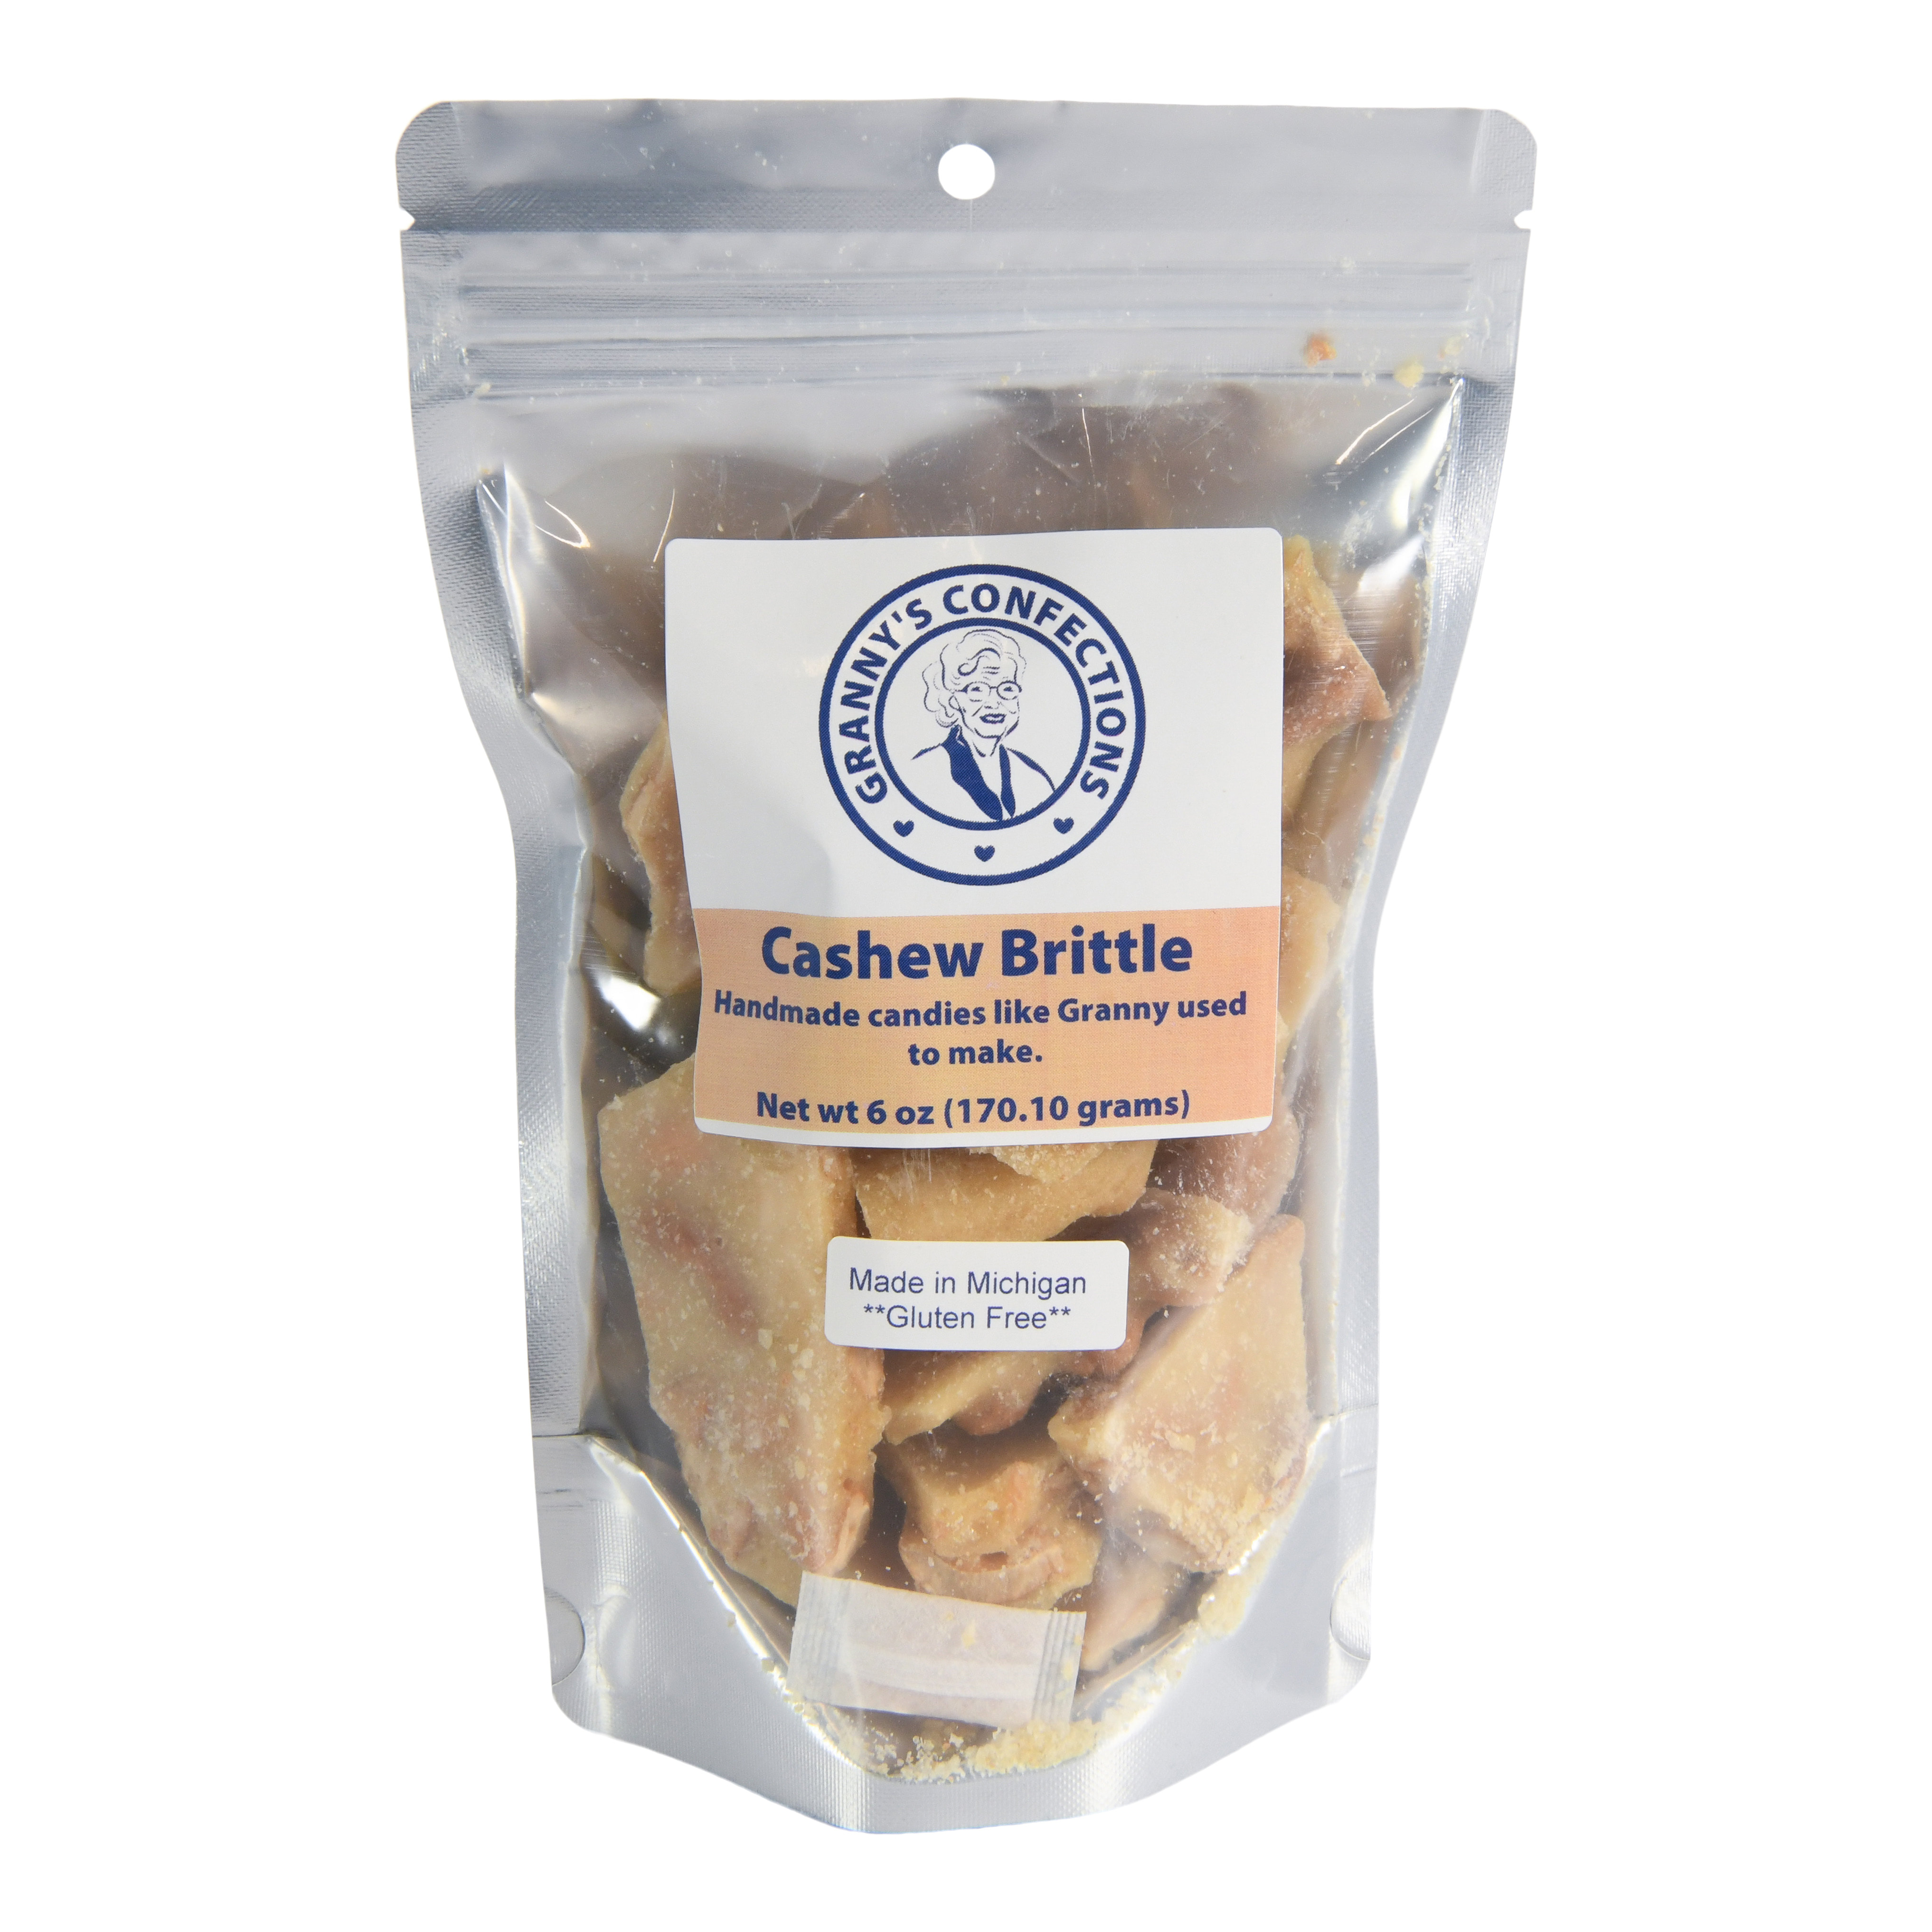 midtown global market cashew brittle